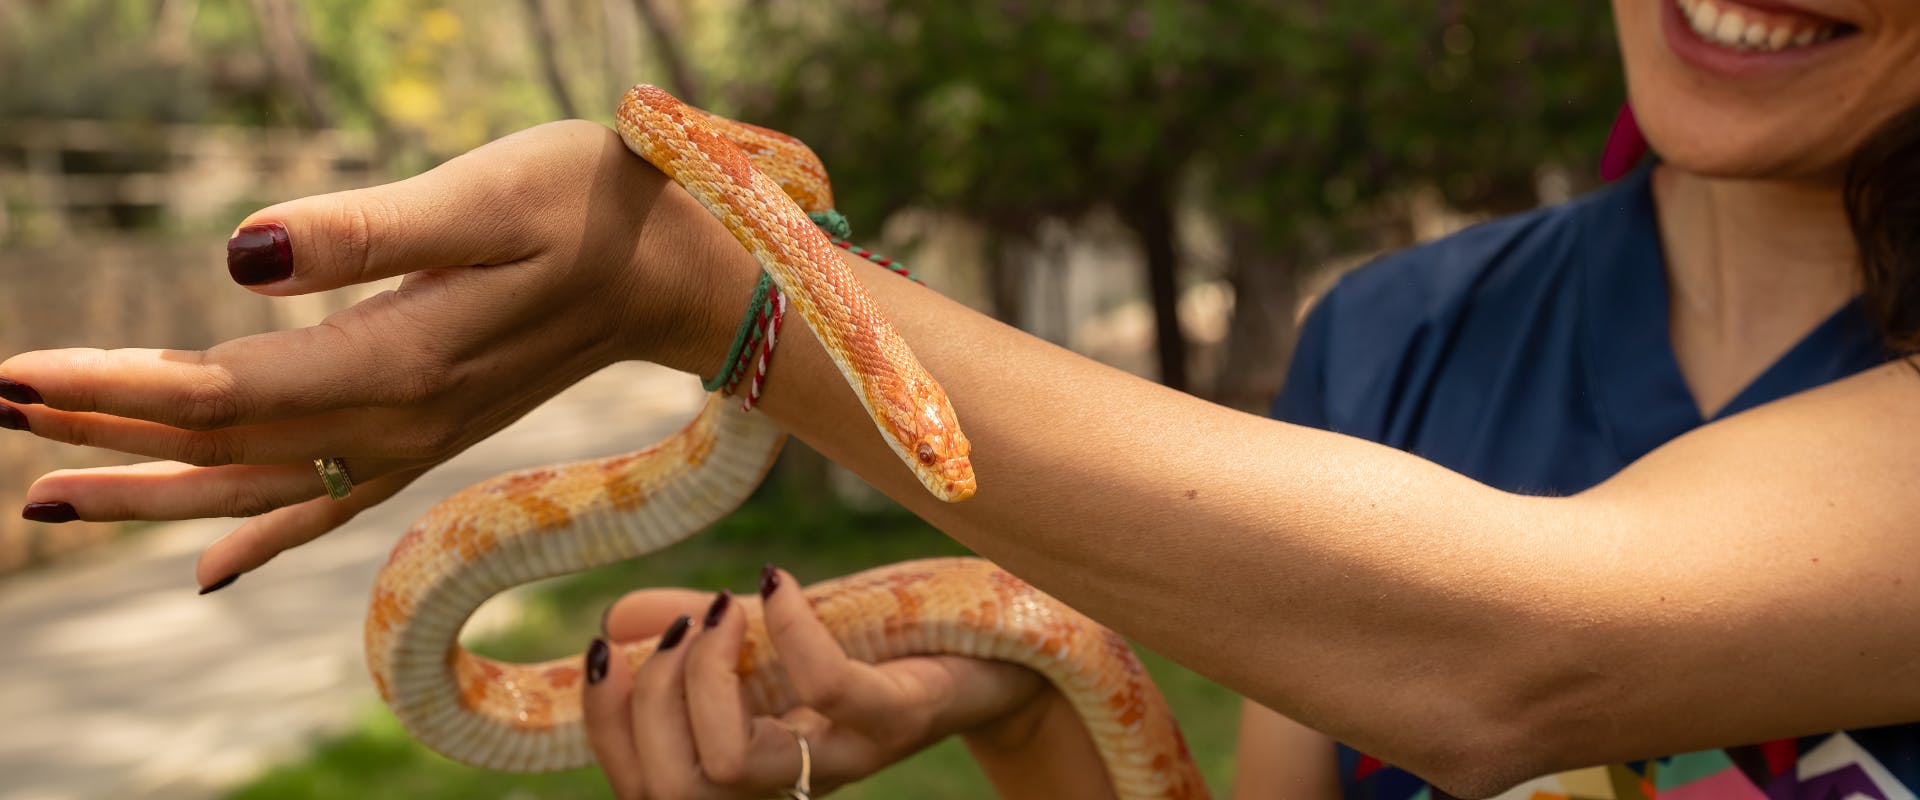 An exotic pet sitter handles a corn snake.